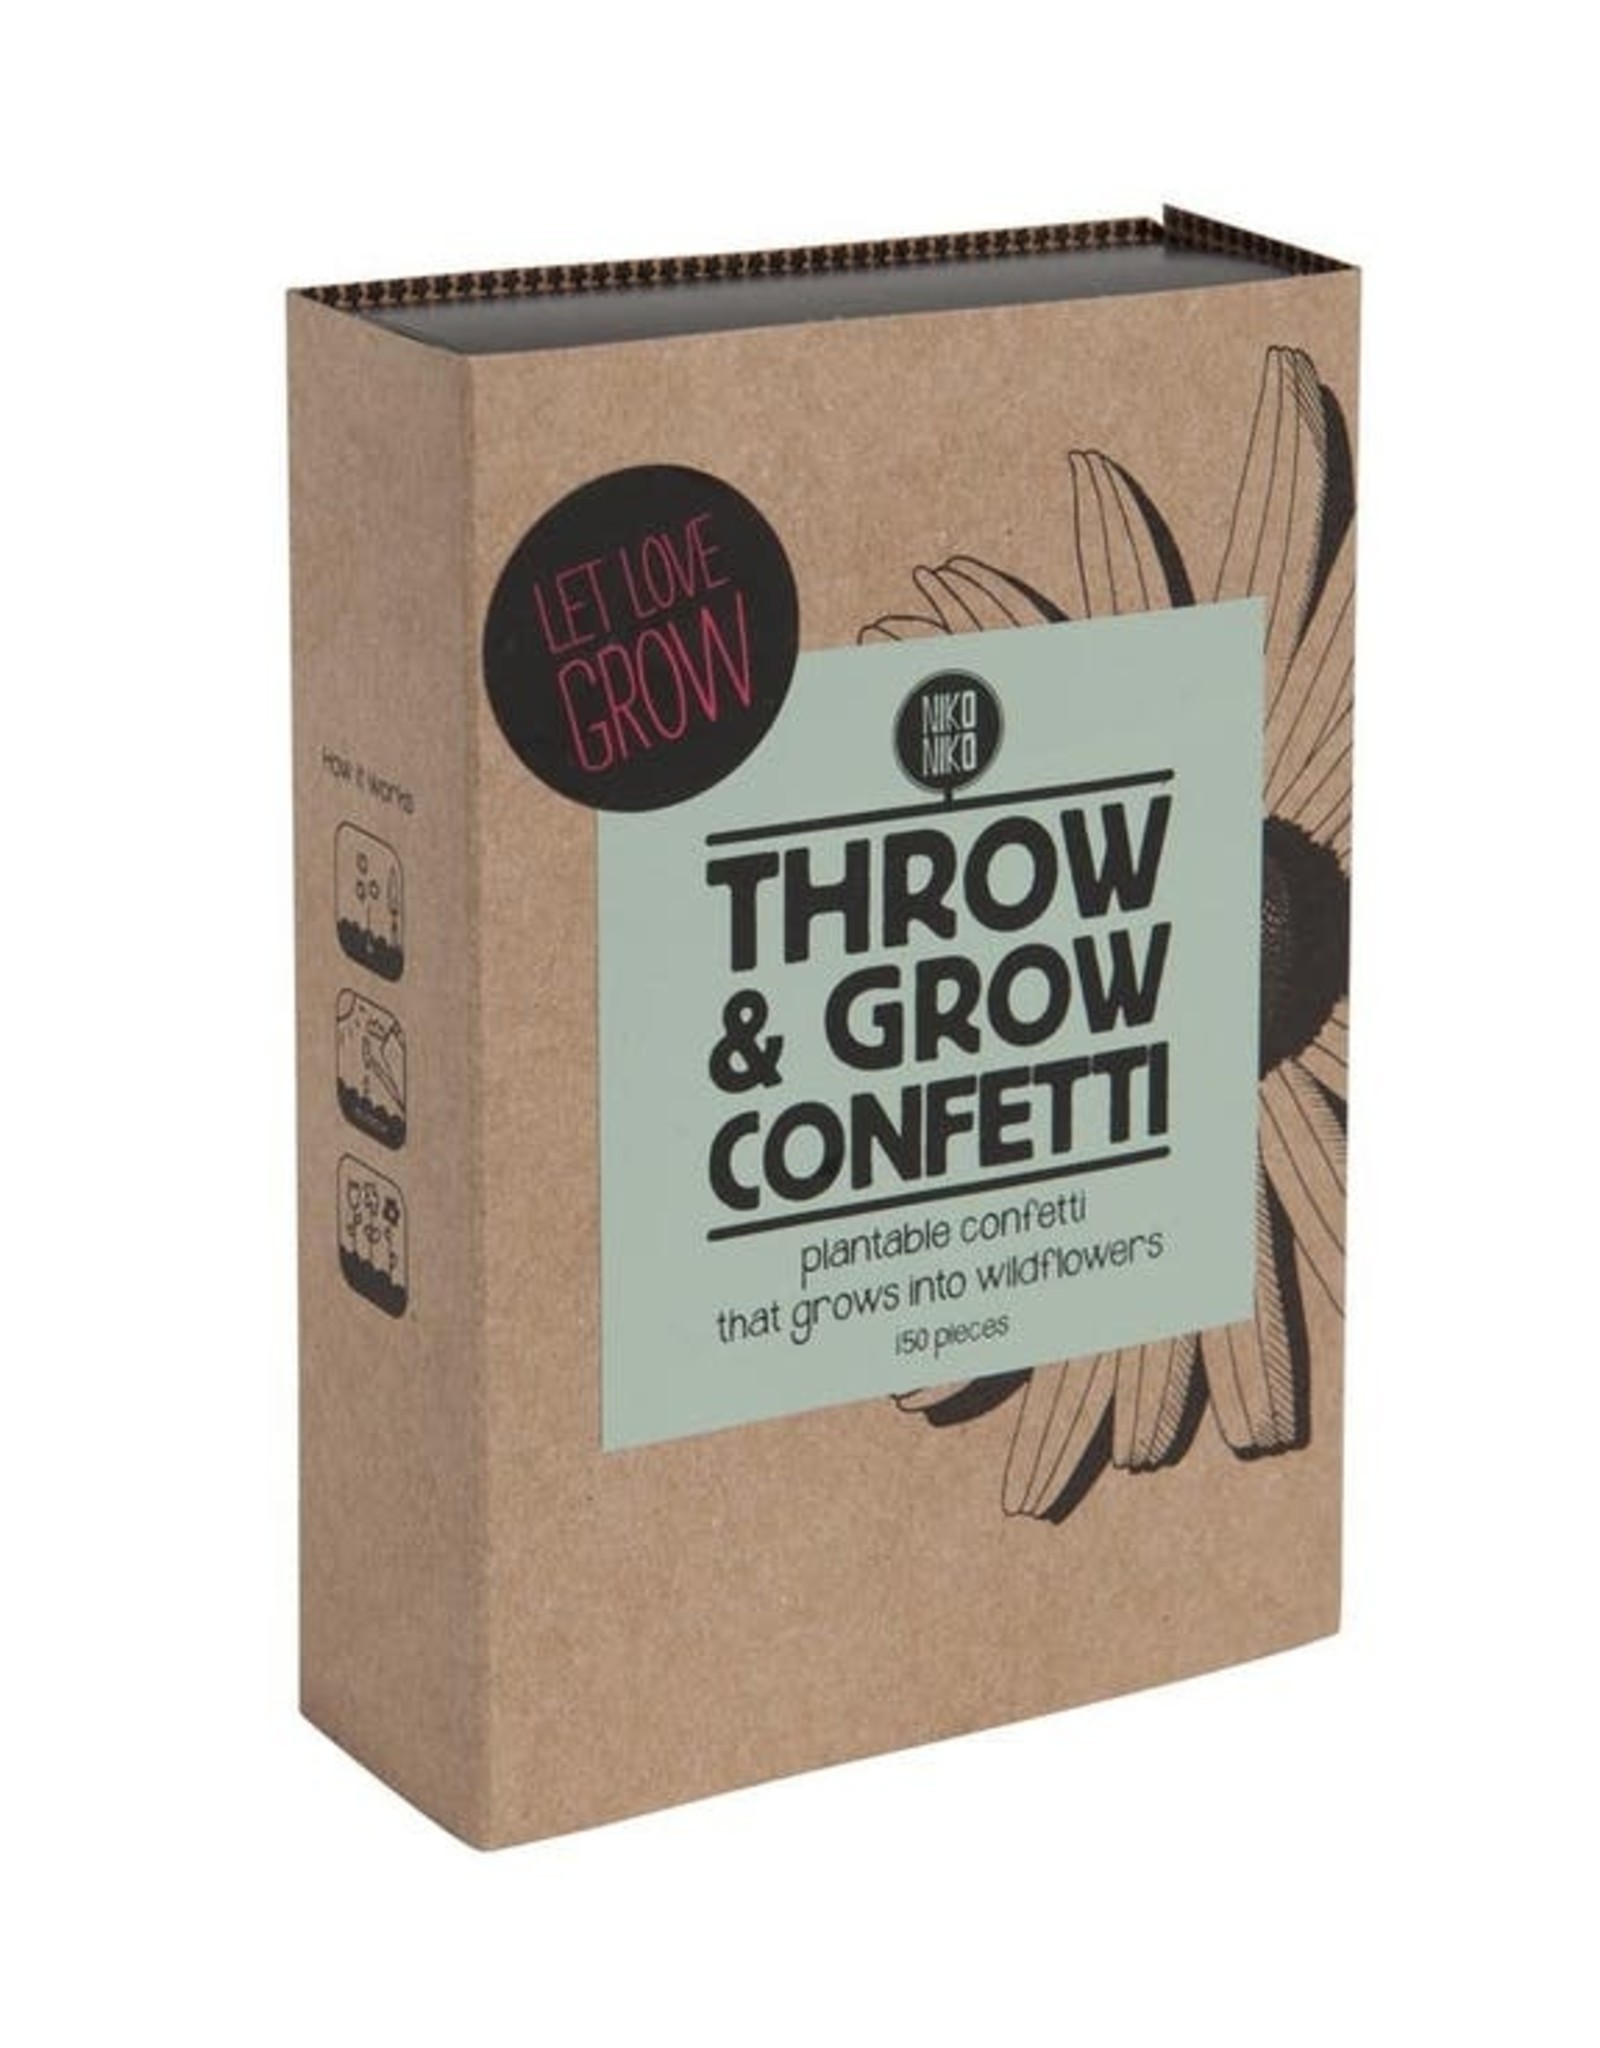 Niko Niko Throw and Grow confetti - let love grow - 150 confettis